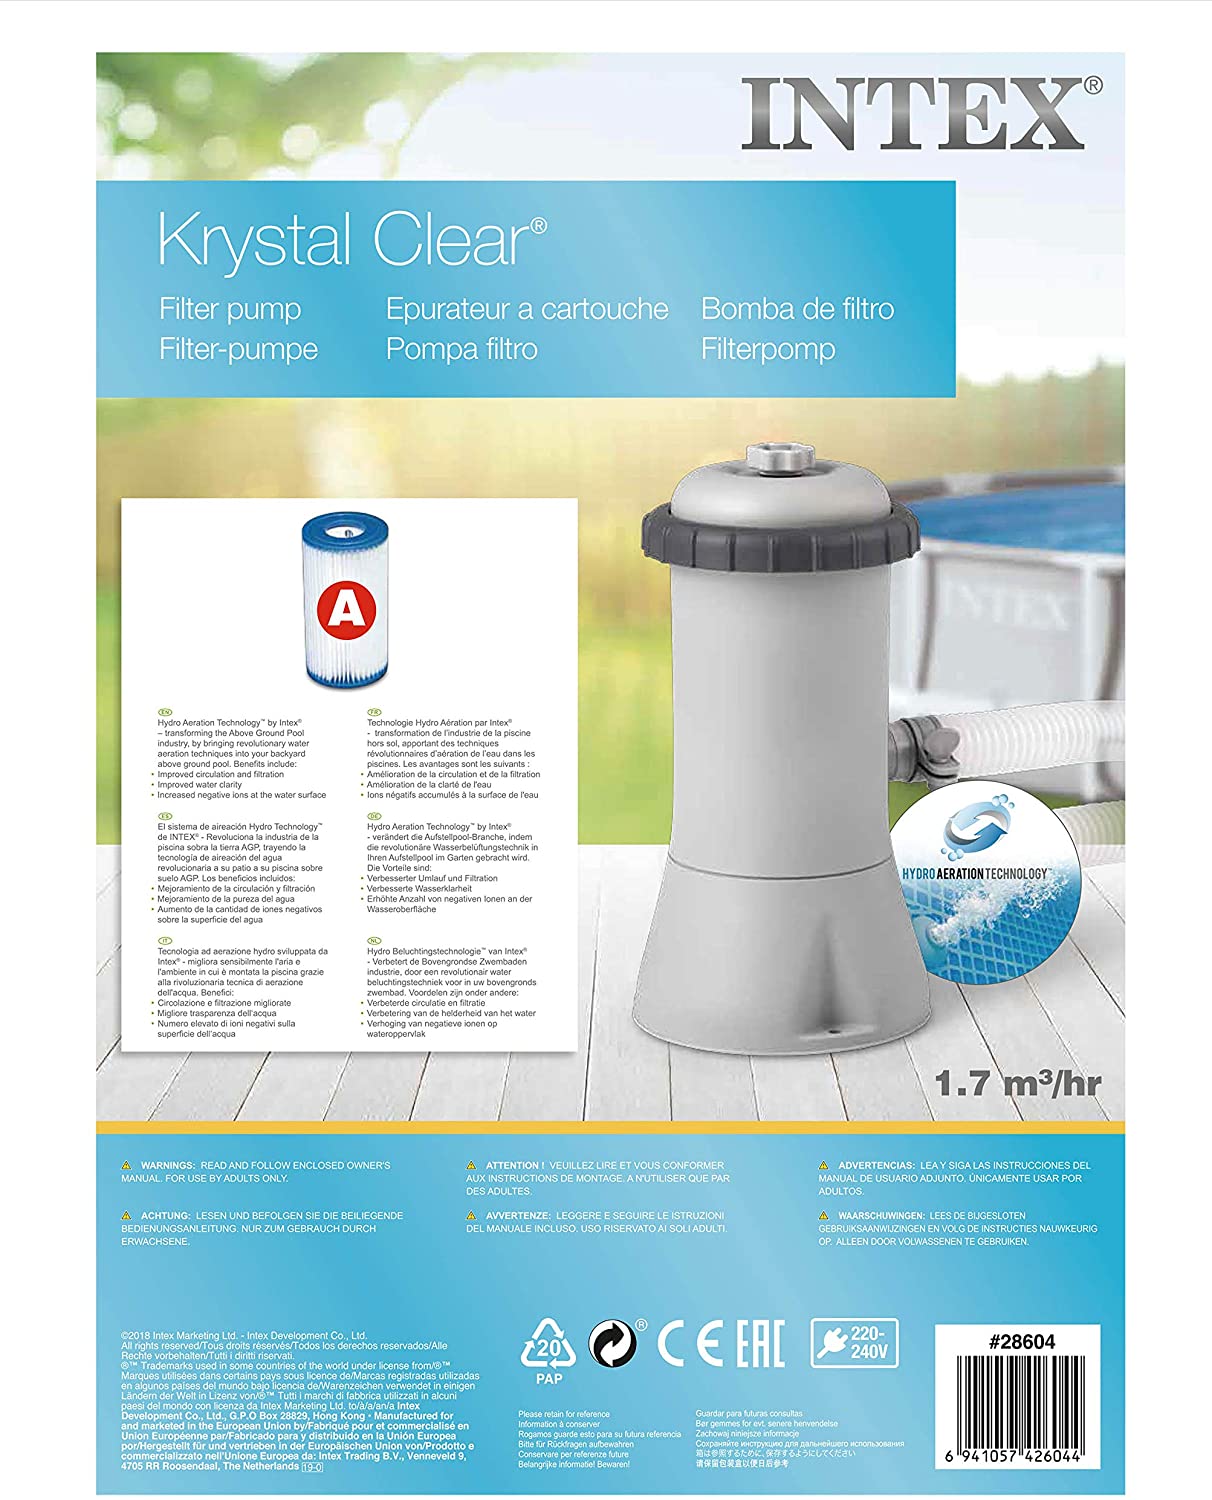 Intex Krystal Clear 1000 Gallon Per Hour Filter Swimming Pool Pump